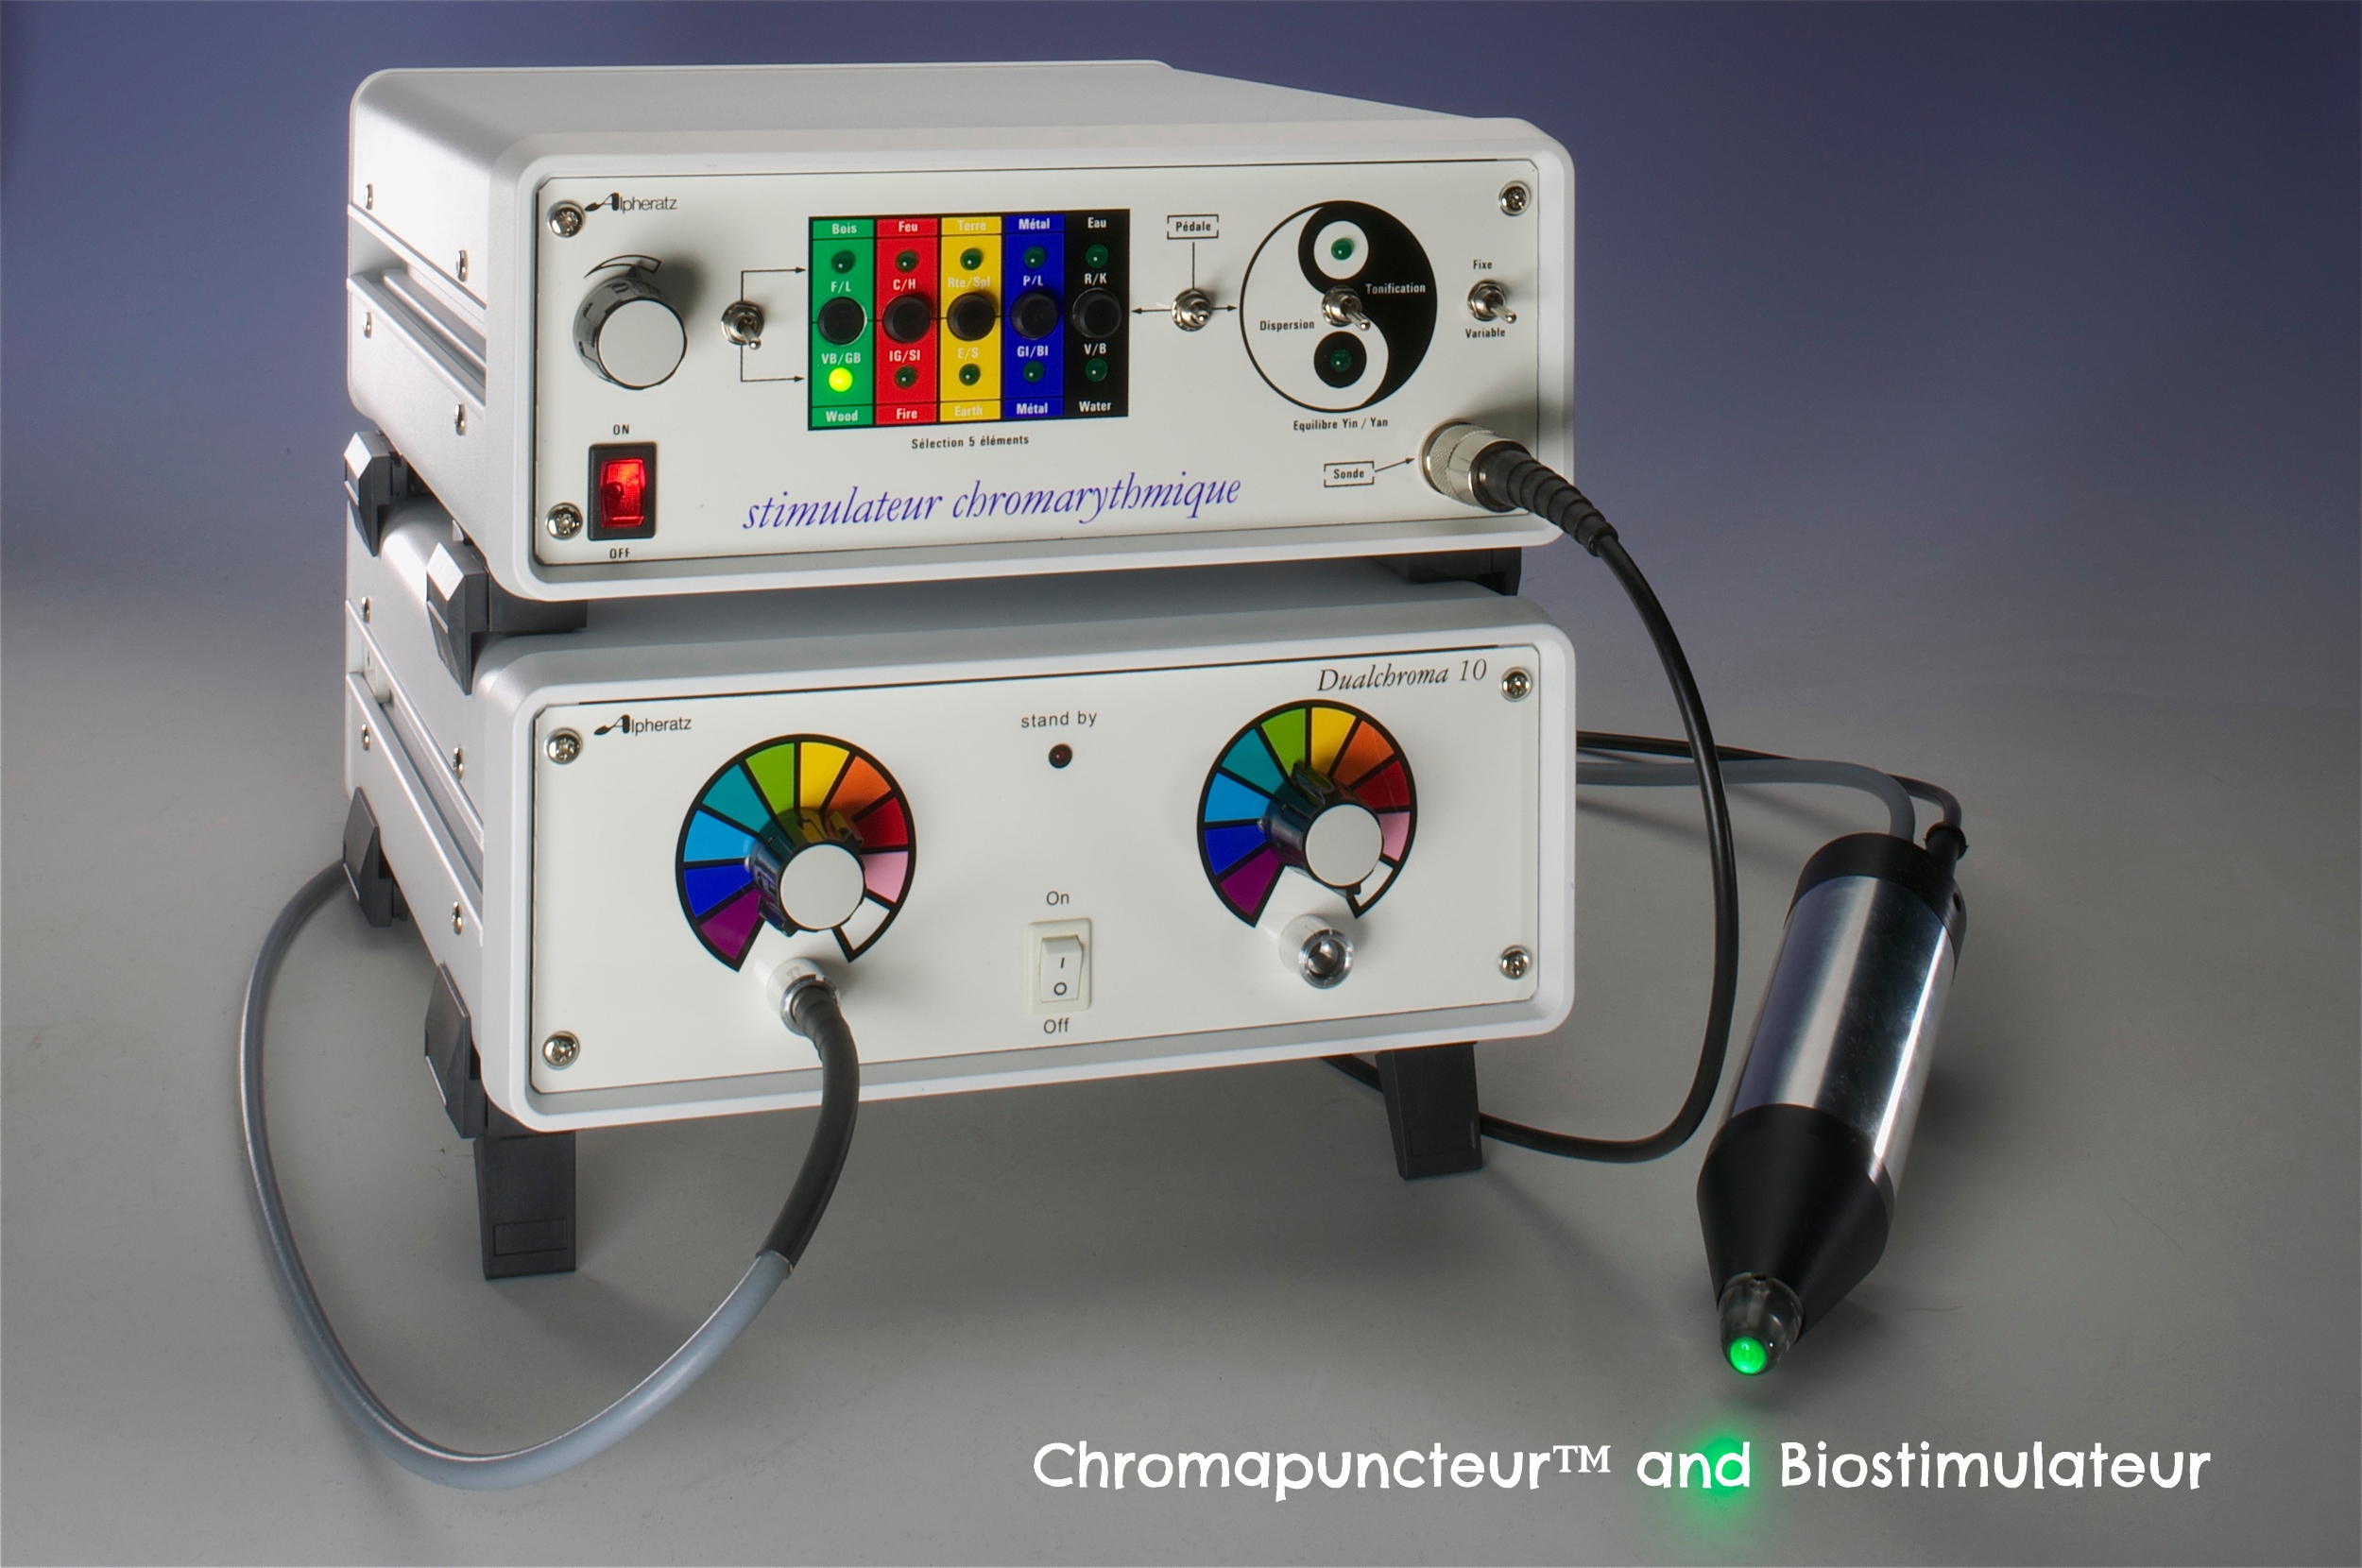 Chromapuncteur™ and Biostimulateur™